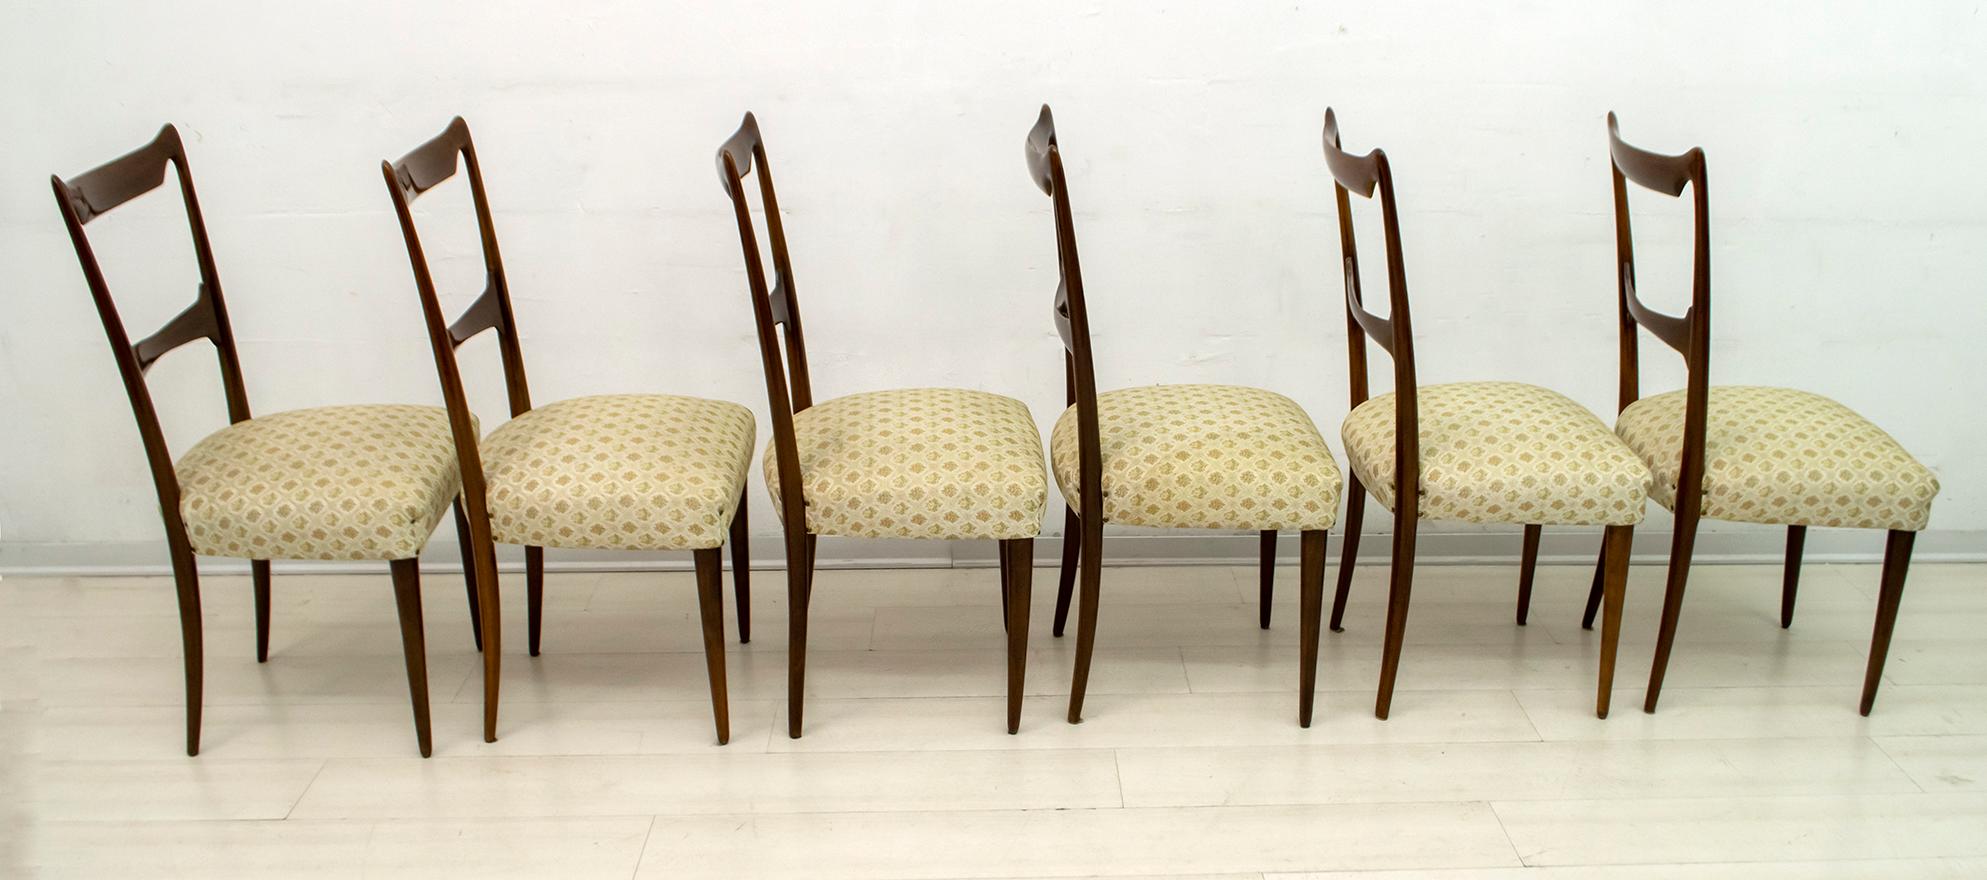 Sechs Esszimmerstühle, entworfen von dem berühmten italienischen Architekten Guglielmo Ulrich, Stühle aus massivem Nussbaumholz und gepolstert mit Stoff, die Stühle wurden mit Schellack poliert. Ich empfehle eine neue Beschichtung.